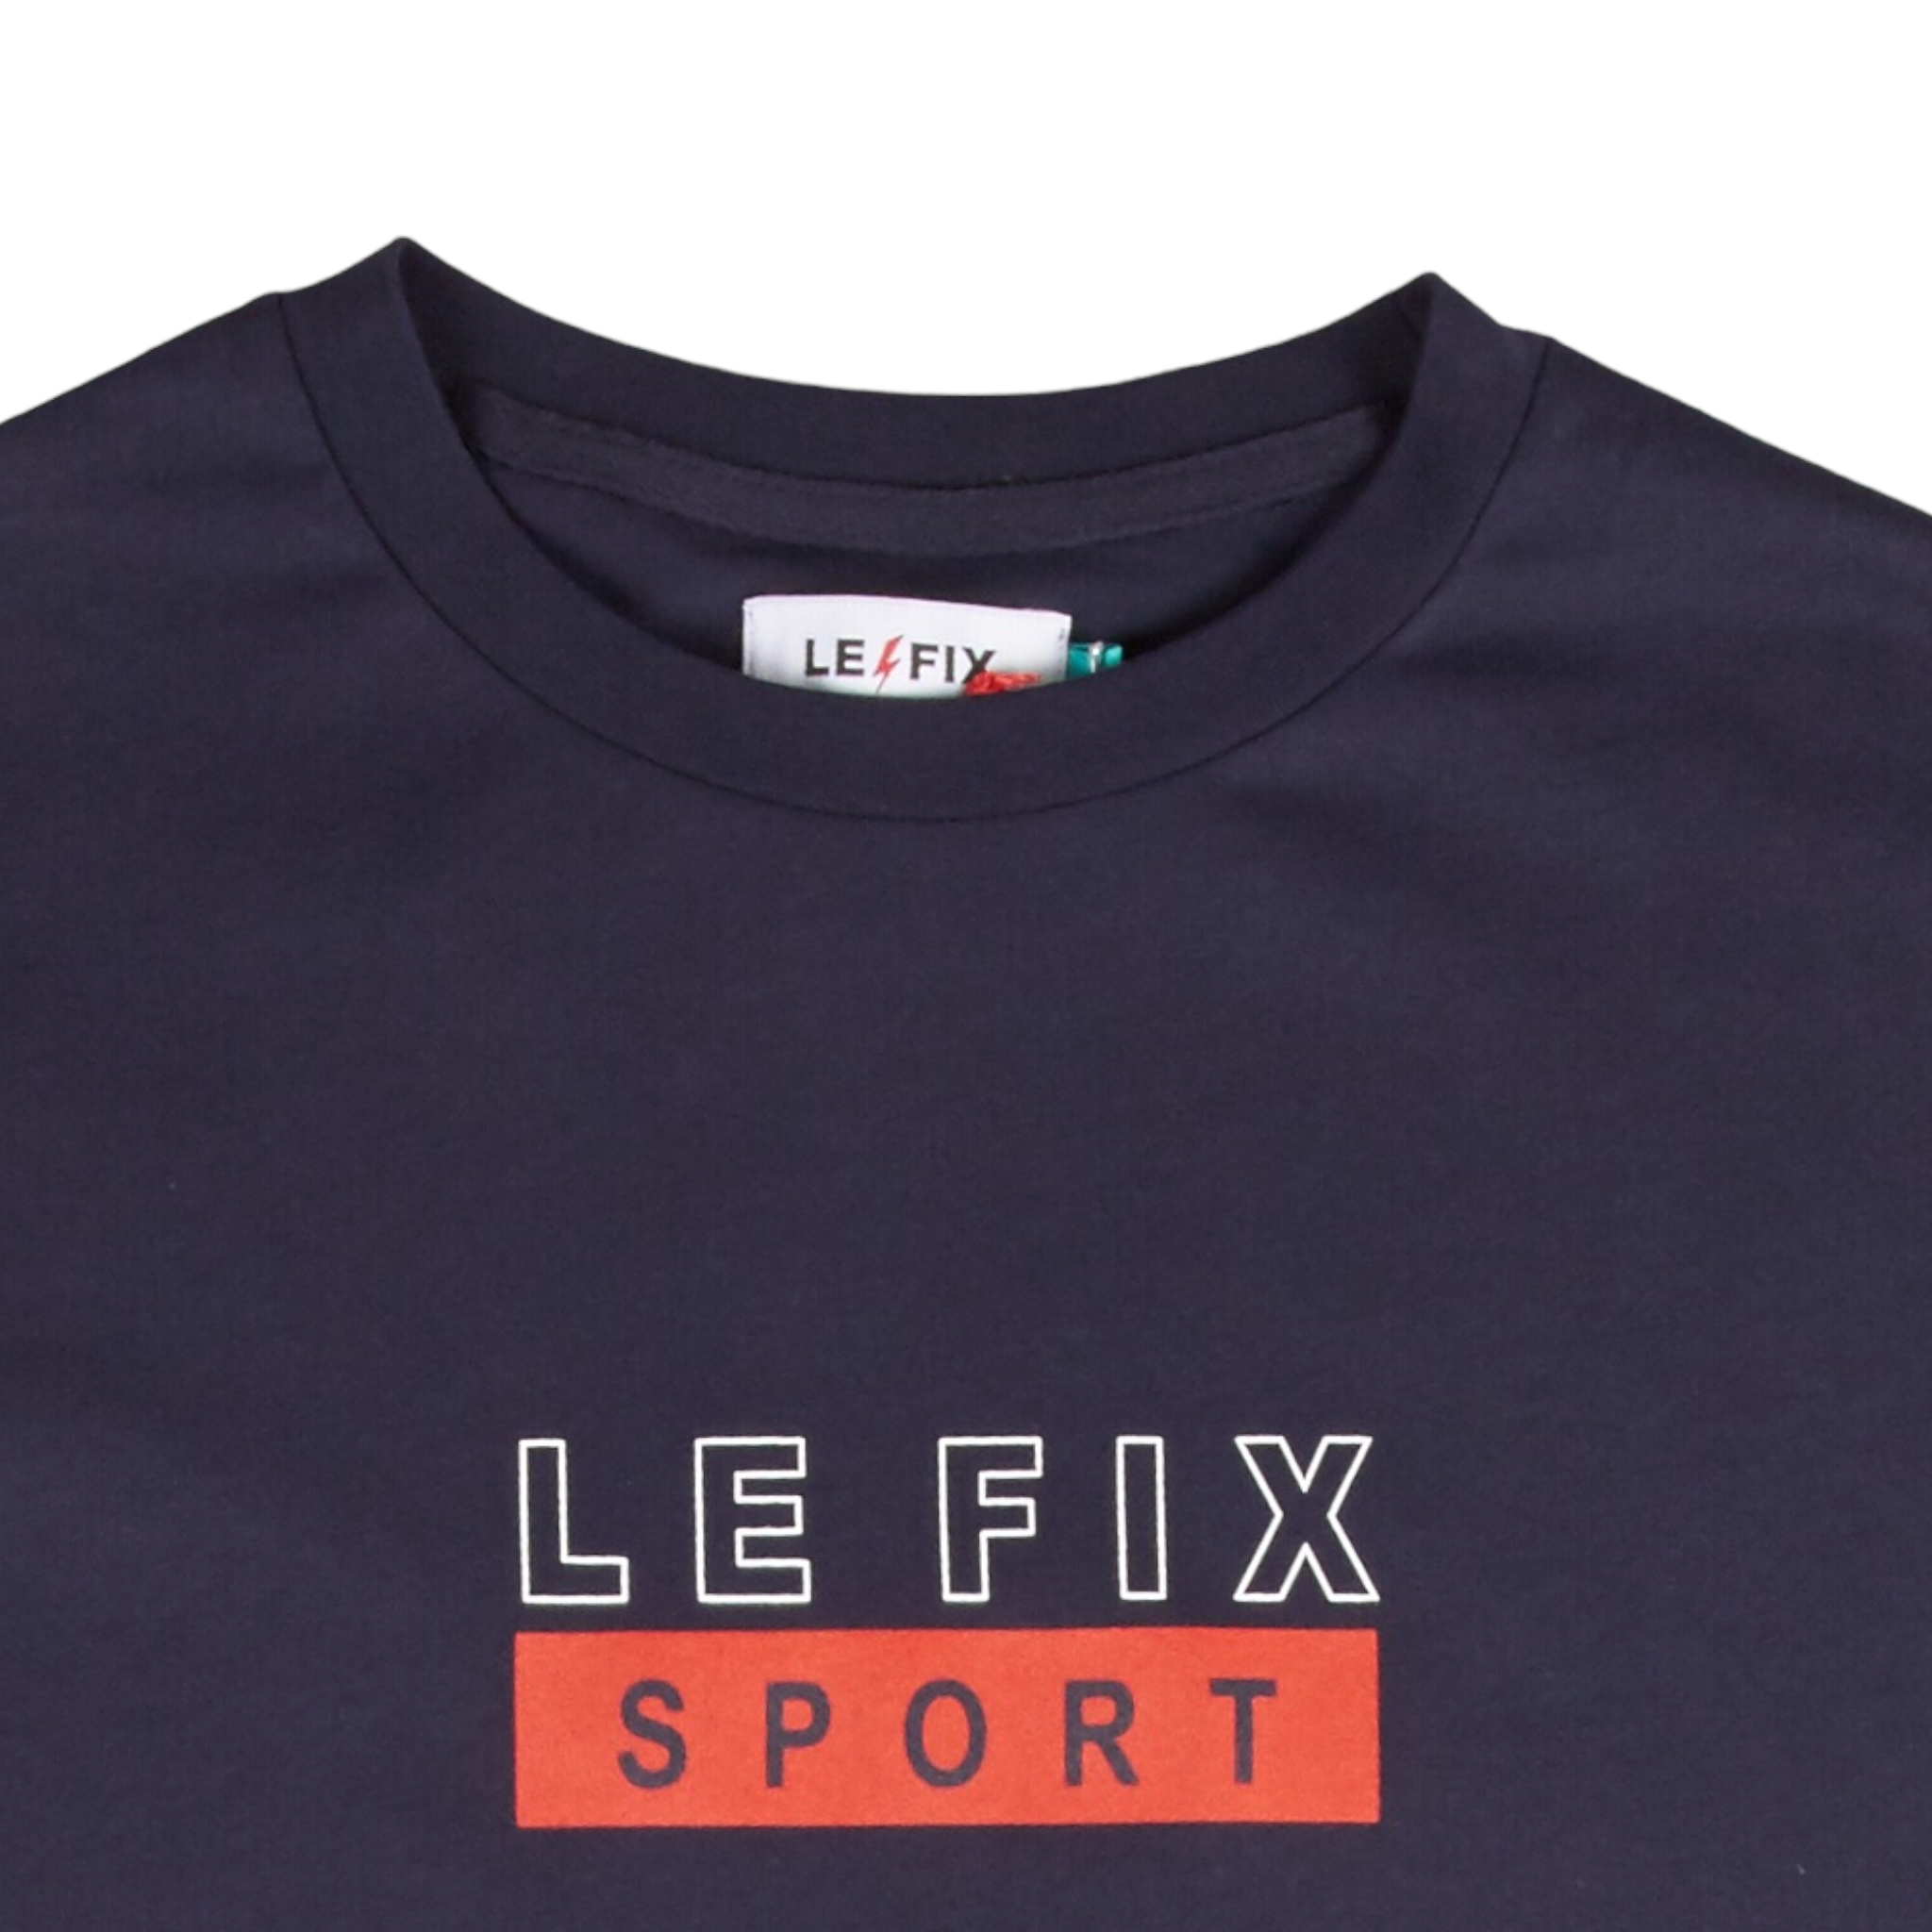 LE FIX T-SHIRT – Le-fix.com